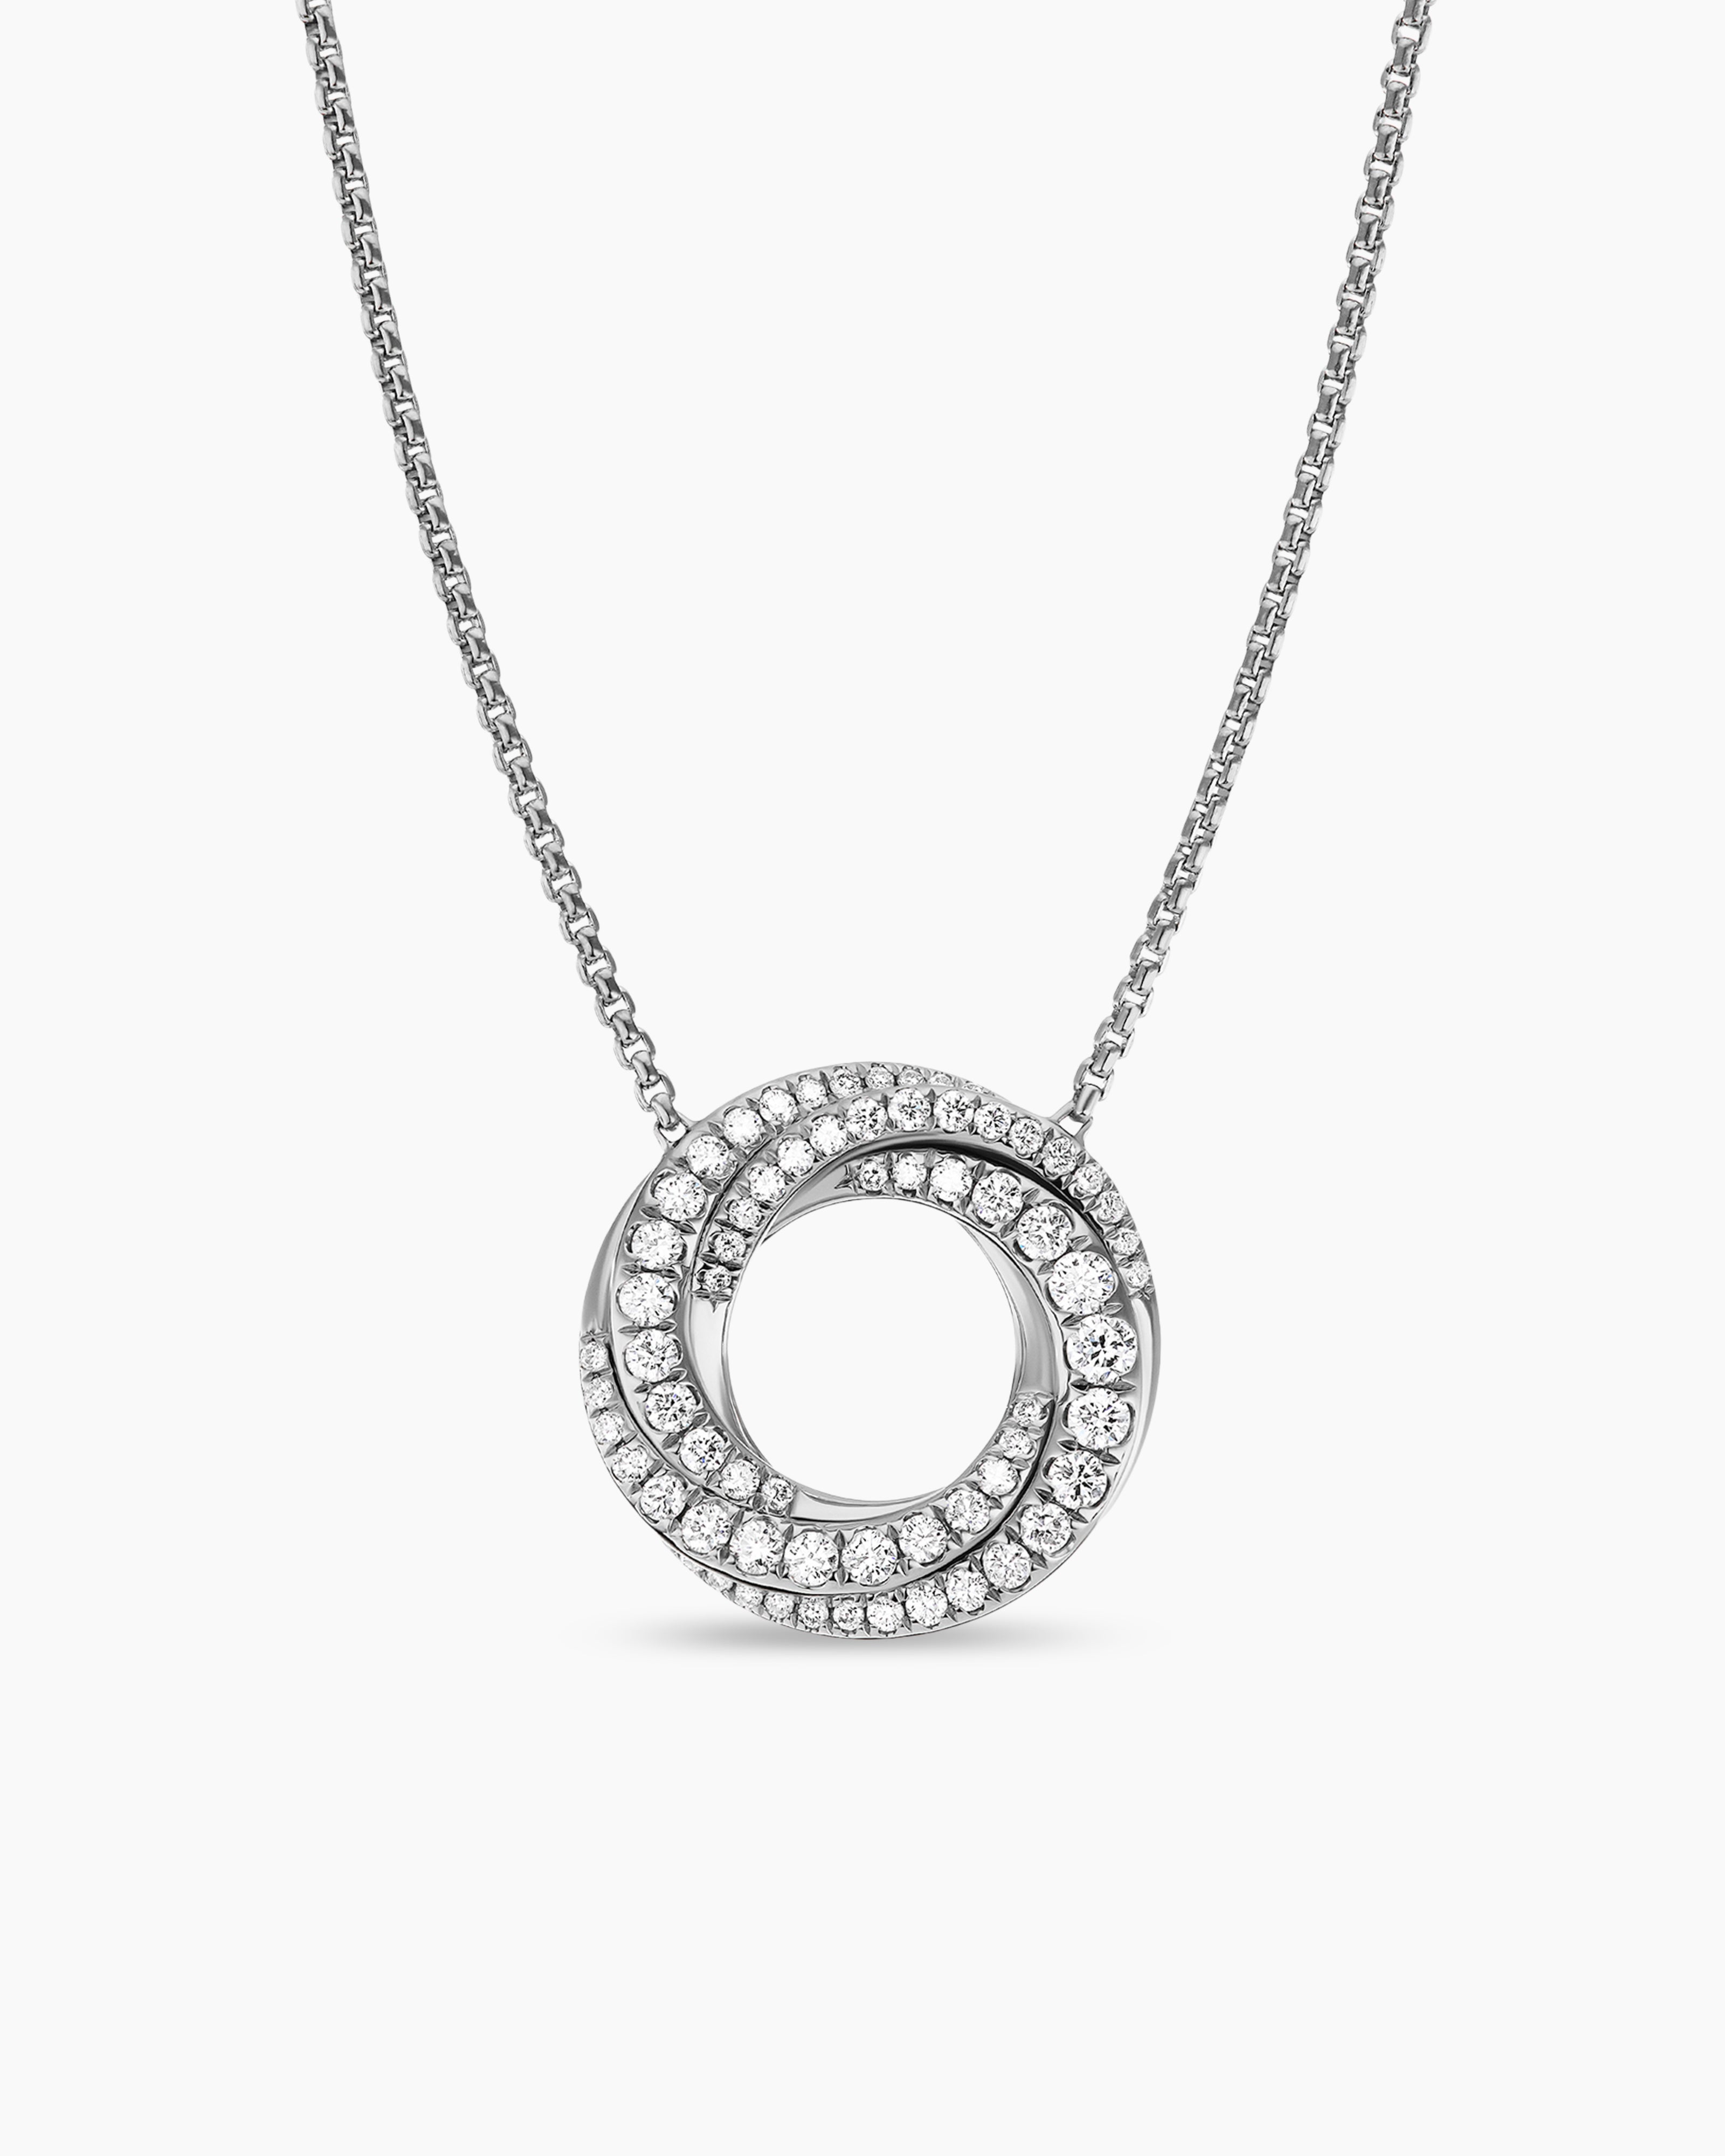 David Yurman Crossover Mini Pendant Necklace with Diamonds in Silver, 15mm,  16-17